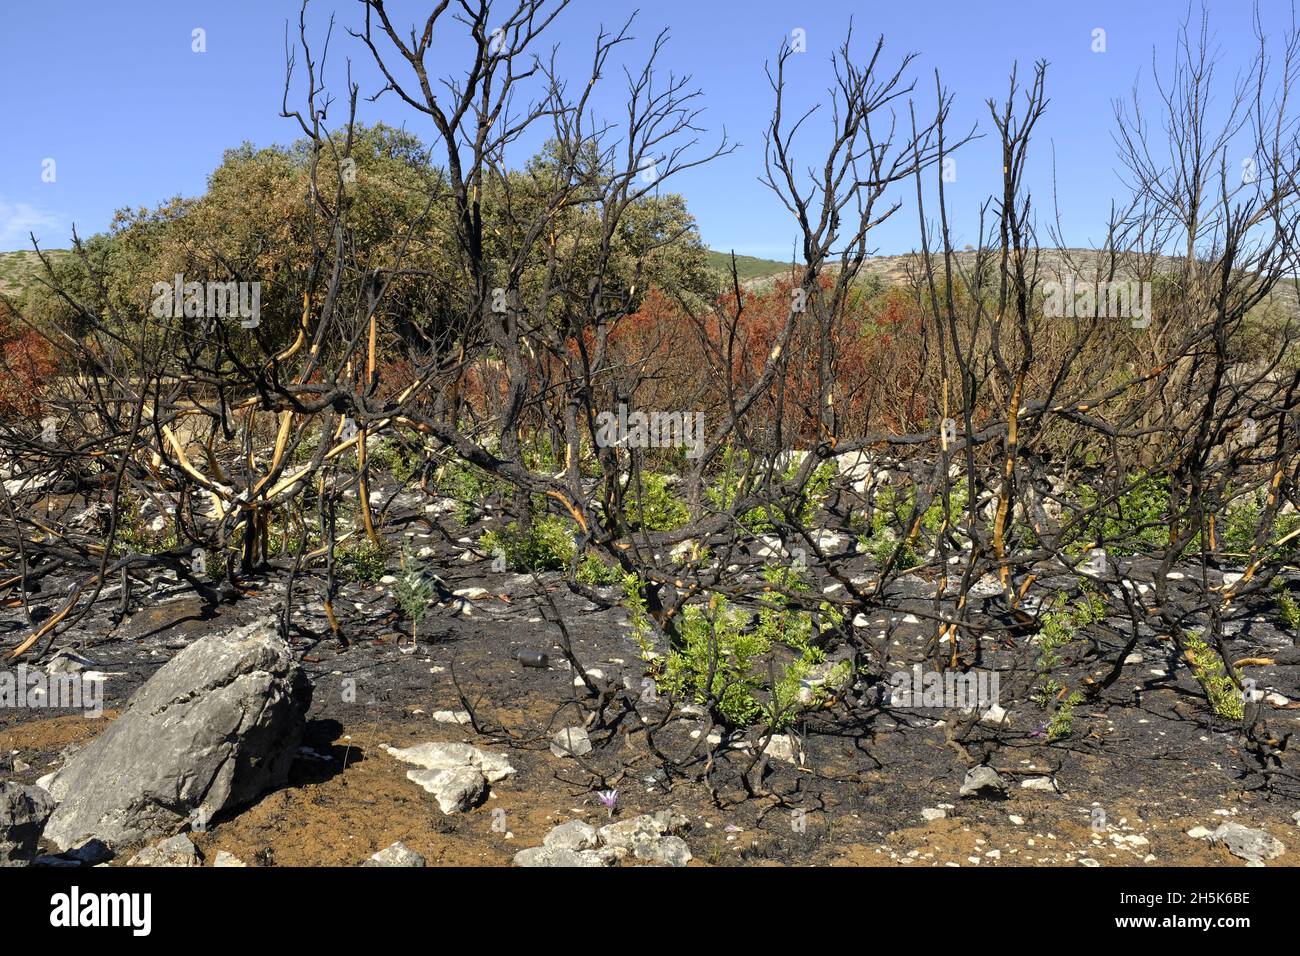 Nachwachsen der Pflanzen 3 Monate nach einem Sommerwildfeuer in der Algar-Region des Naturparks Sierras Subbeticas, Provinz Cordoba, Andalusien, Spanien Stockfoto